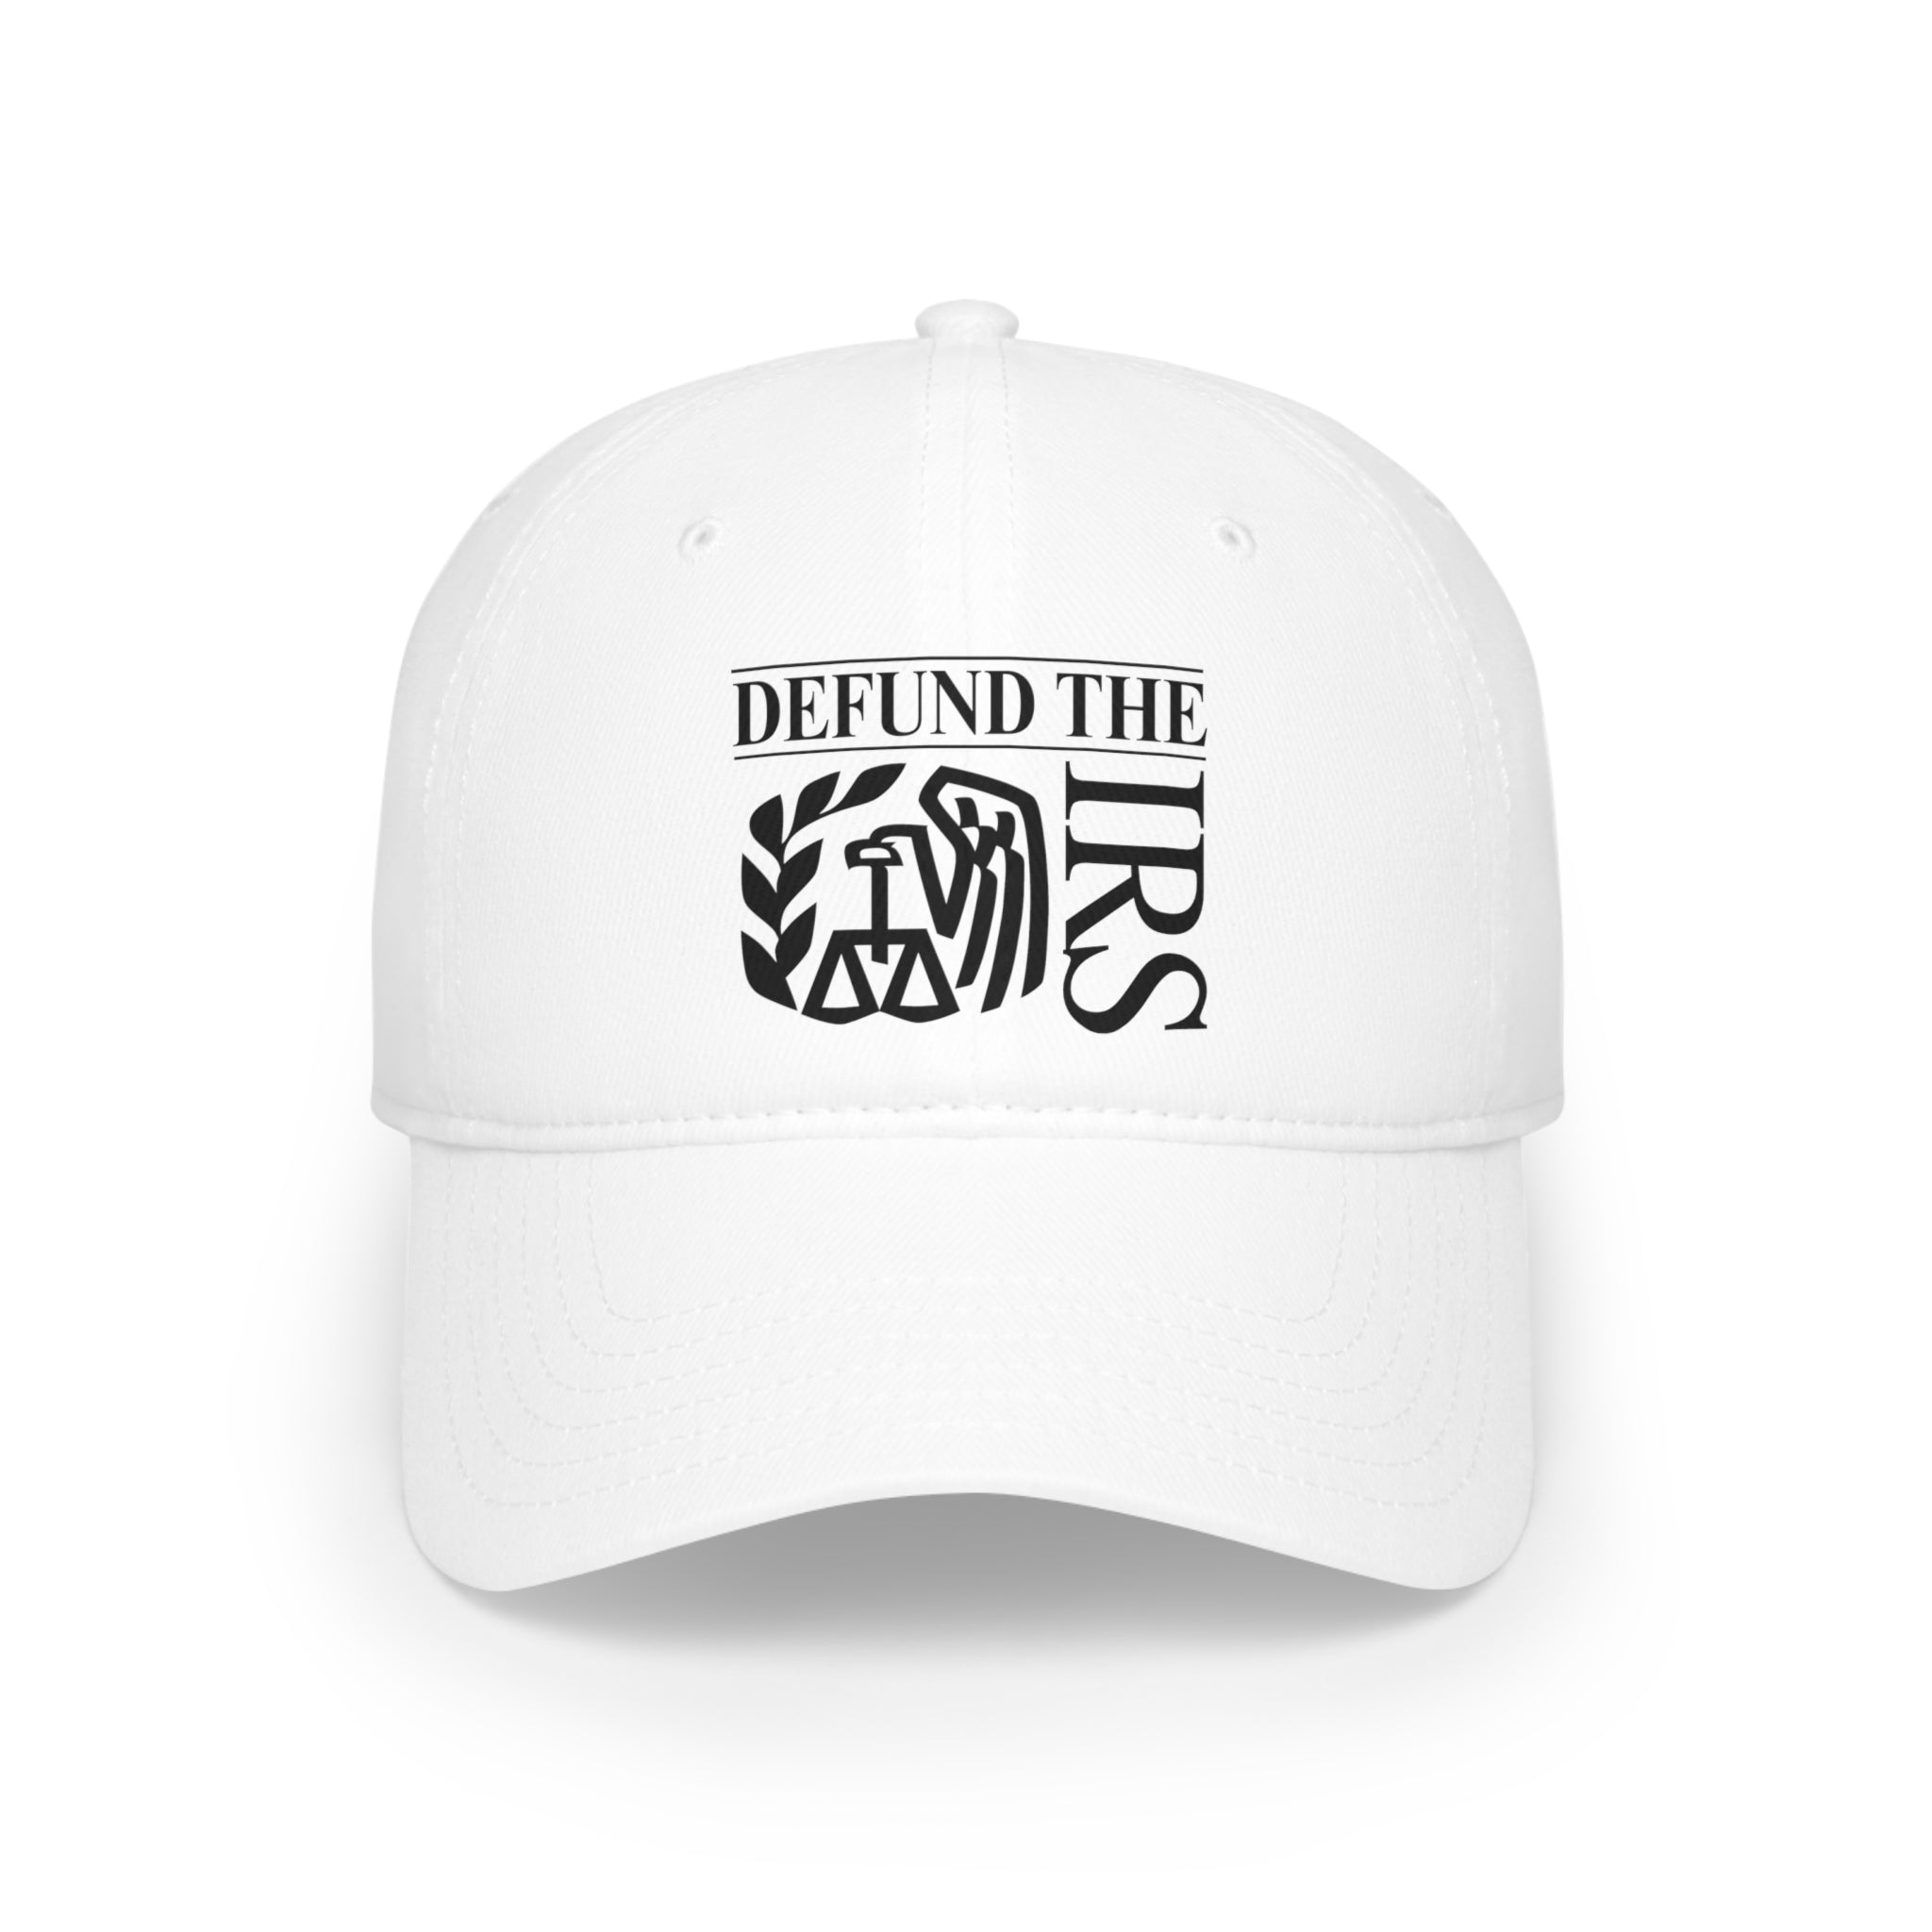 Defund the IRS - Hat